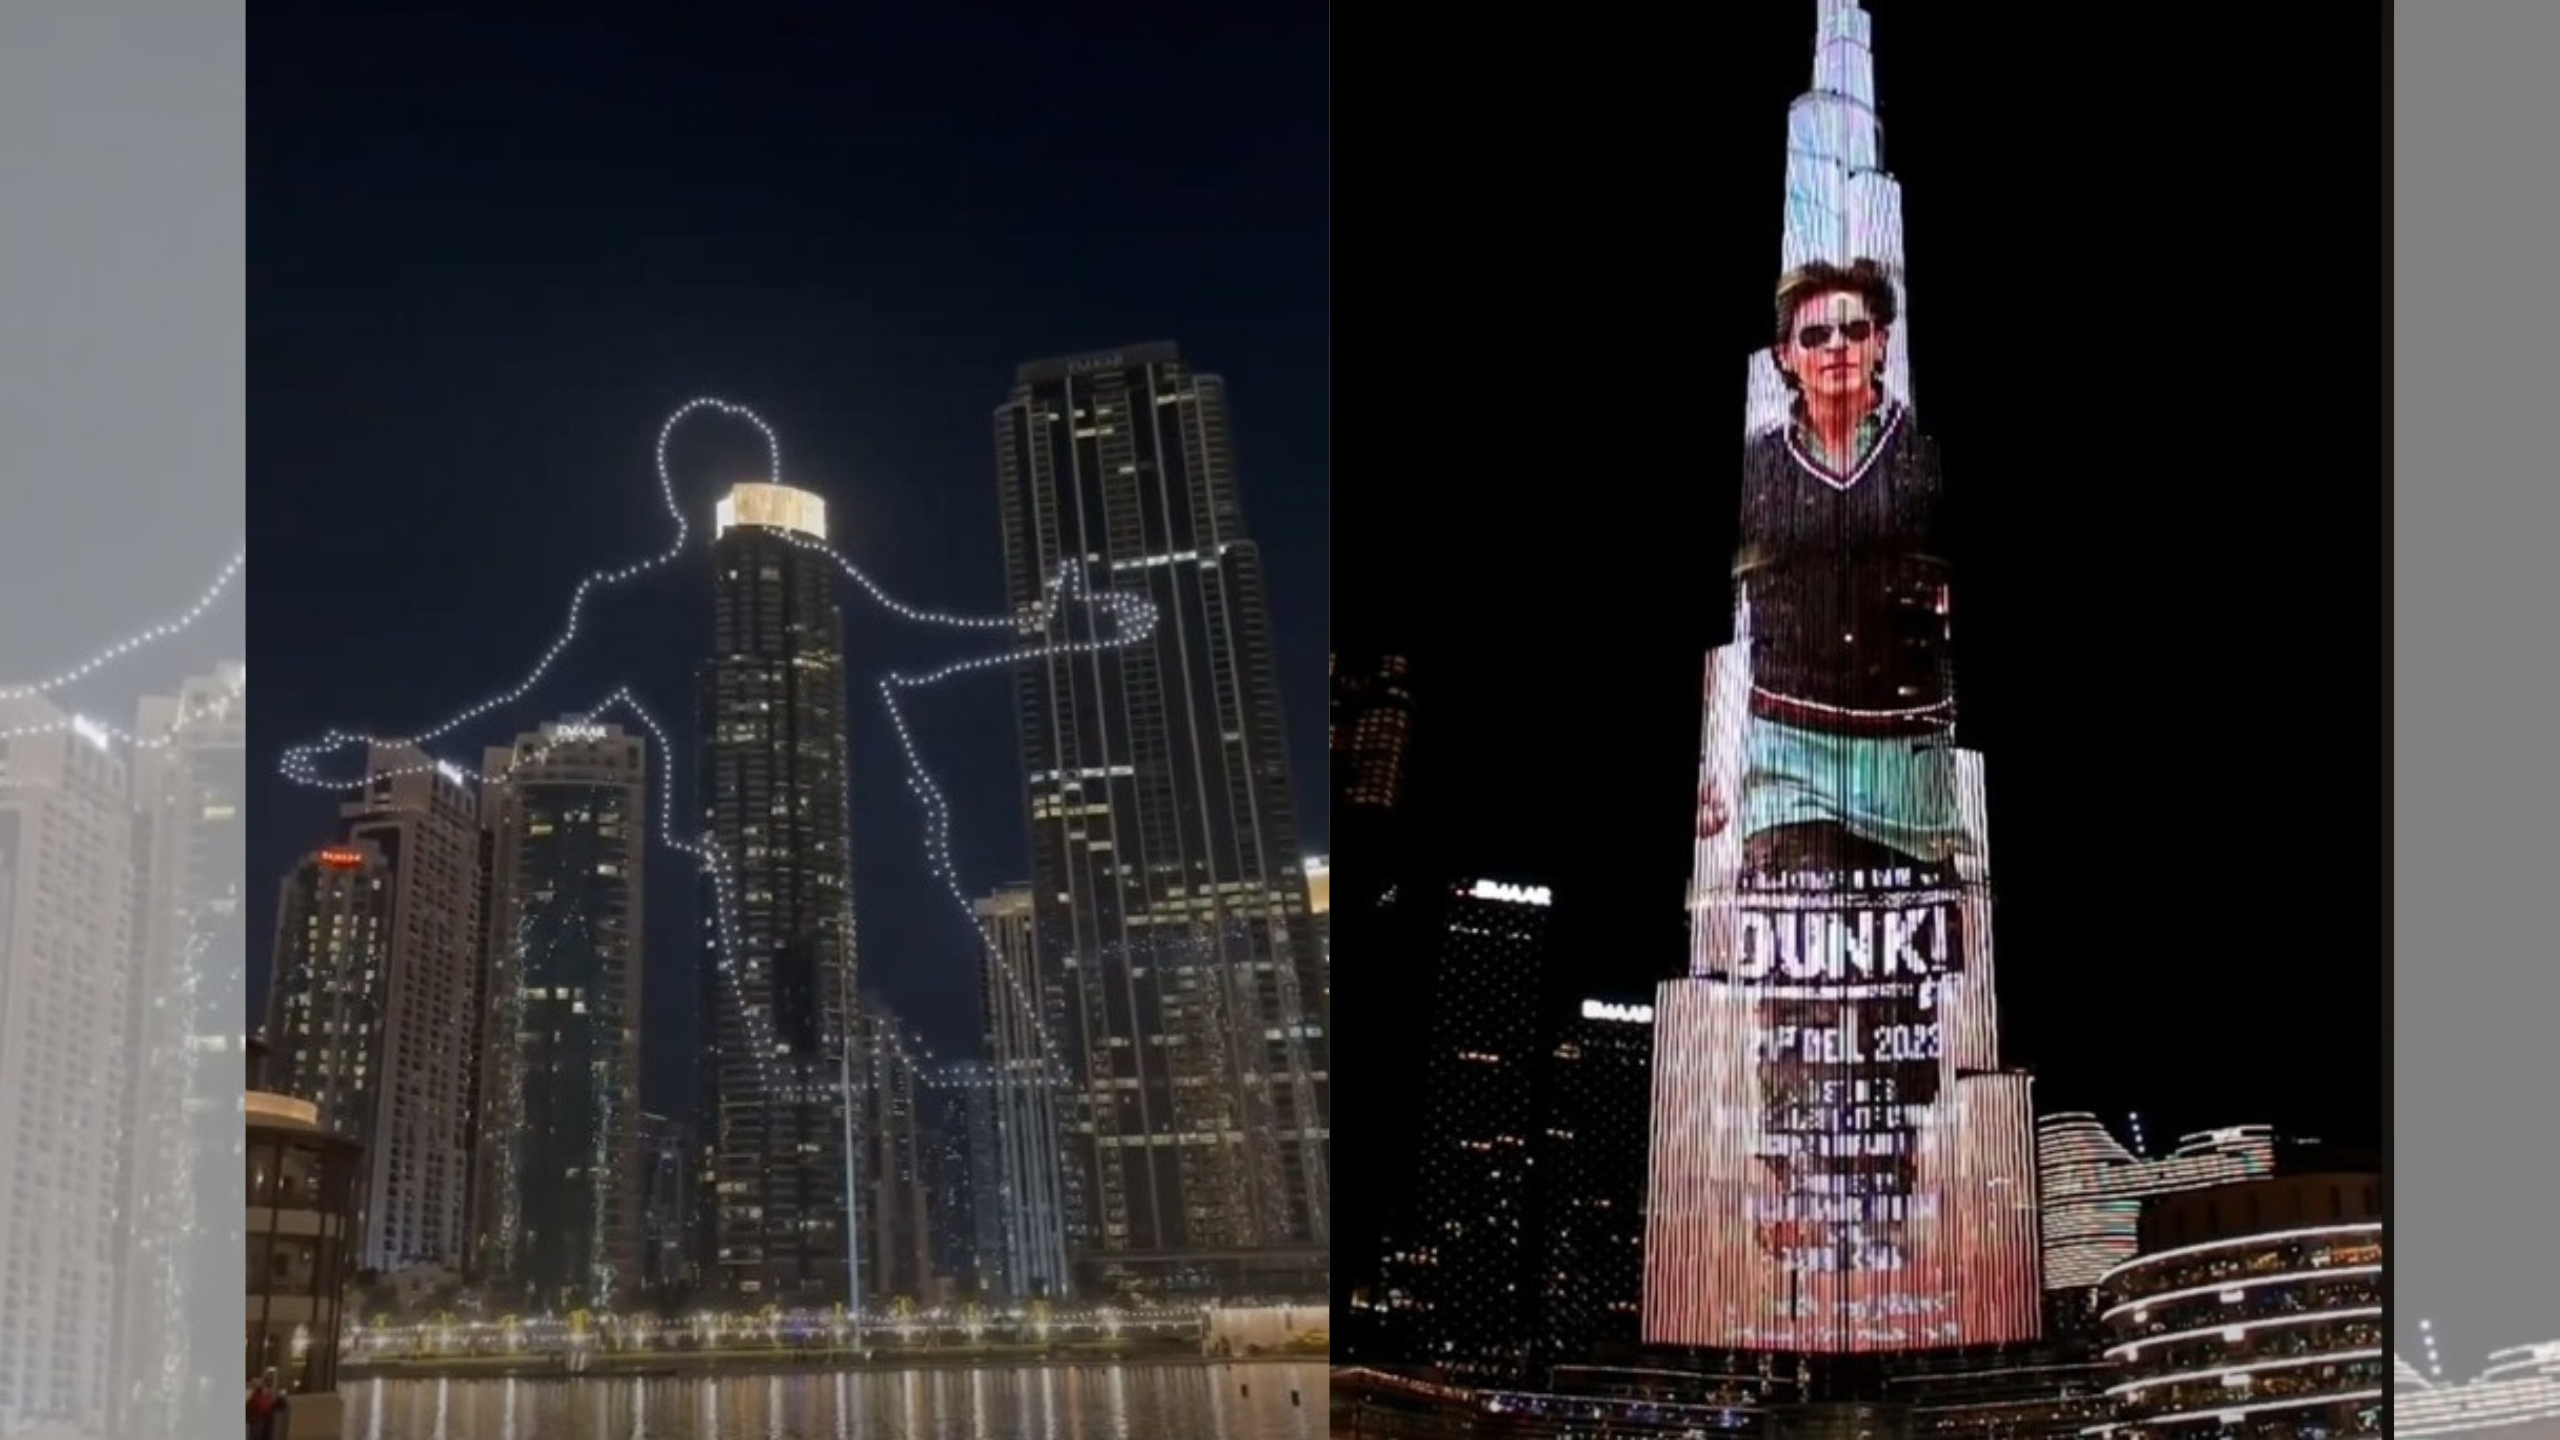 दुबई में दिखी शाहरुख खान स्टारर फिल्म की दीवानगी, बुर्ज खलीफा पर नजर आया डंकी का शानदार ट्रेलर